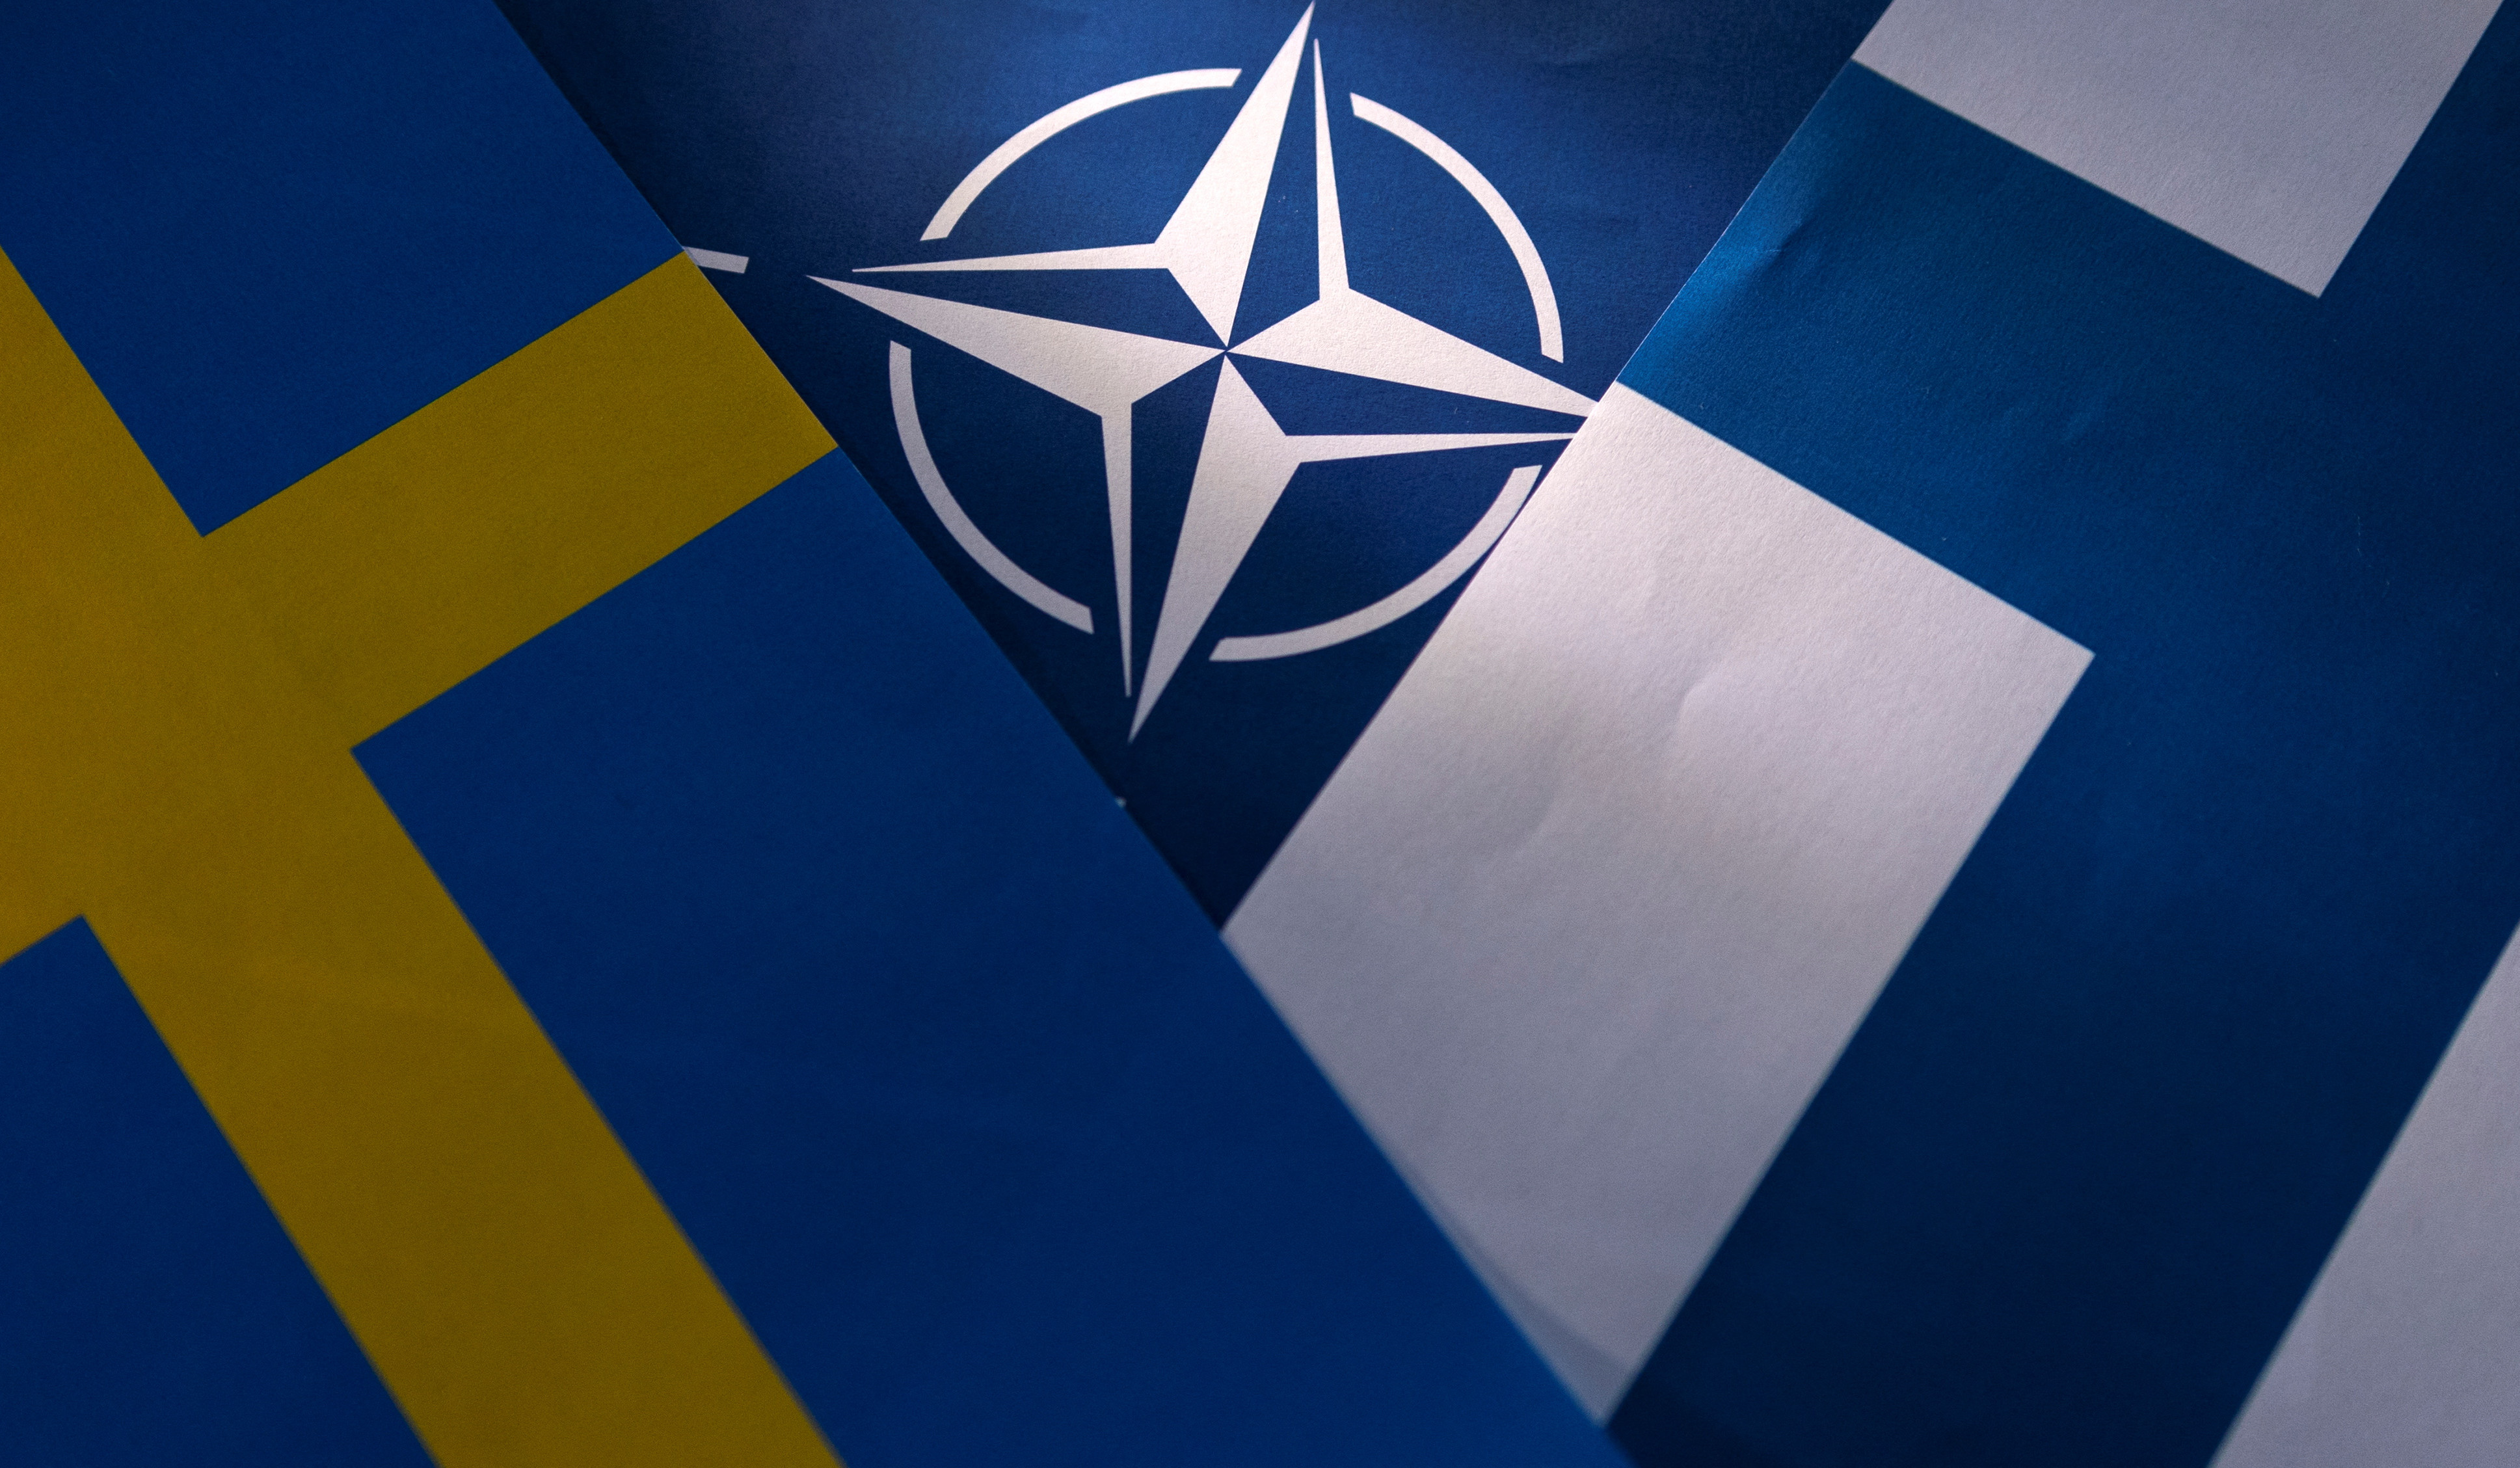 Շվեդիայի և Ֆինլանդիայի պատվիրակությունները Թուրքիայում բանակցություններ կանցկացնեն ՆԱՏՕ-ին անդամակցելու հարցով